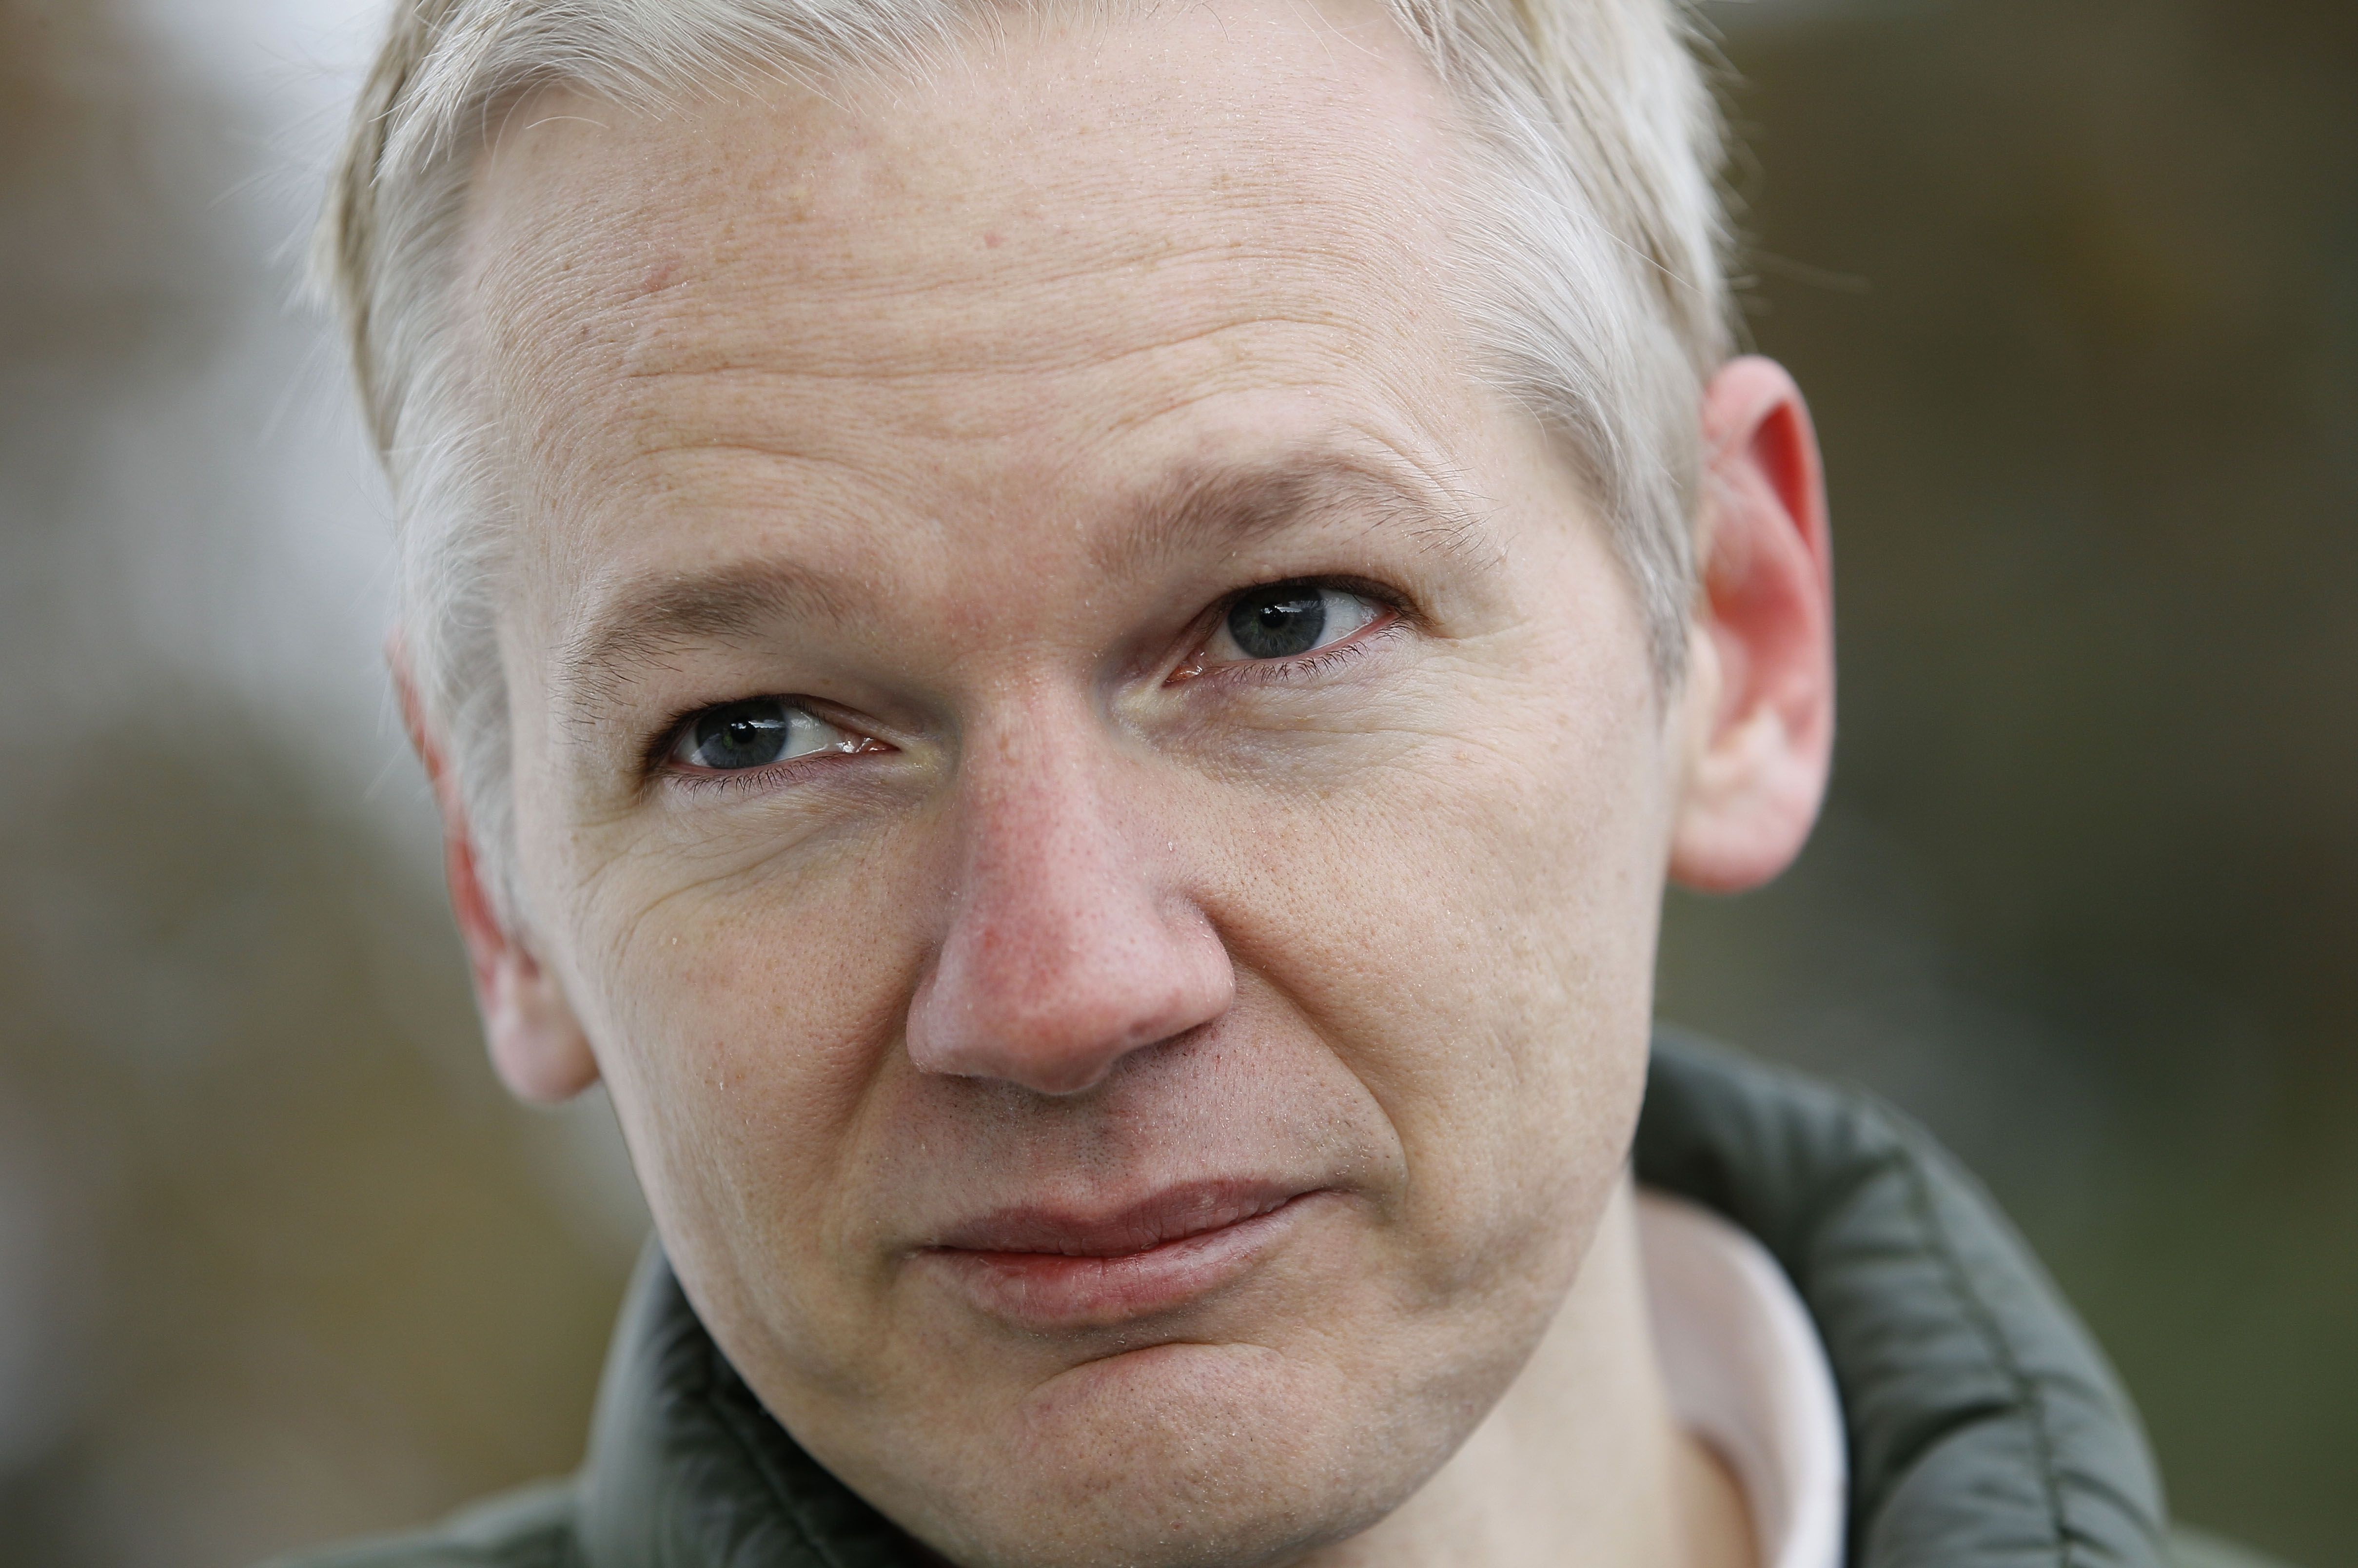 Förhörsledare, Våldtäkt , Brott och straff, Julian Assange, Wikileaks, Sexualbrott